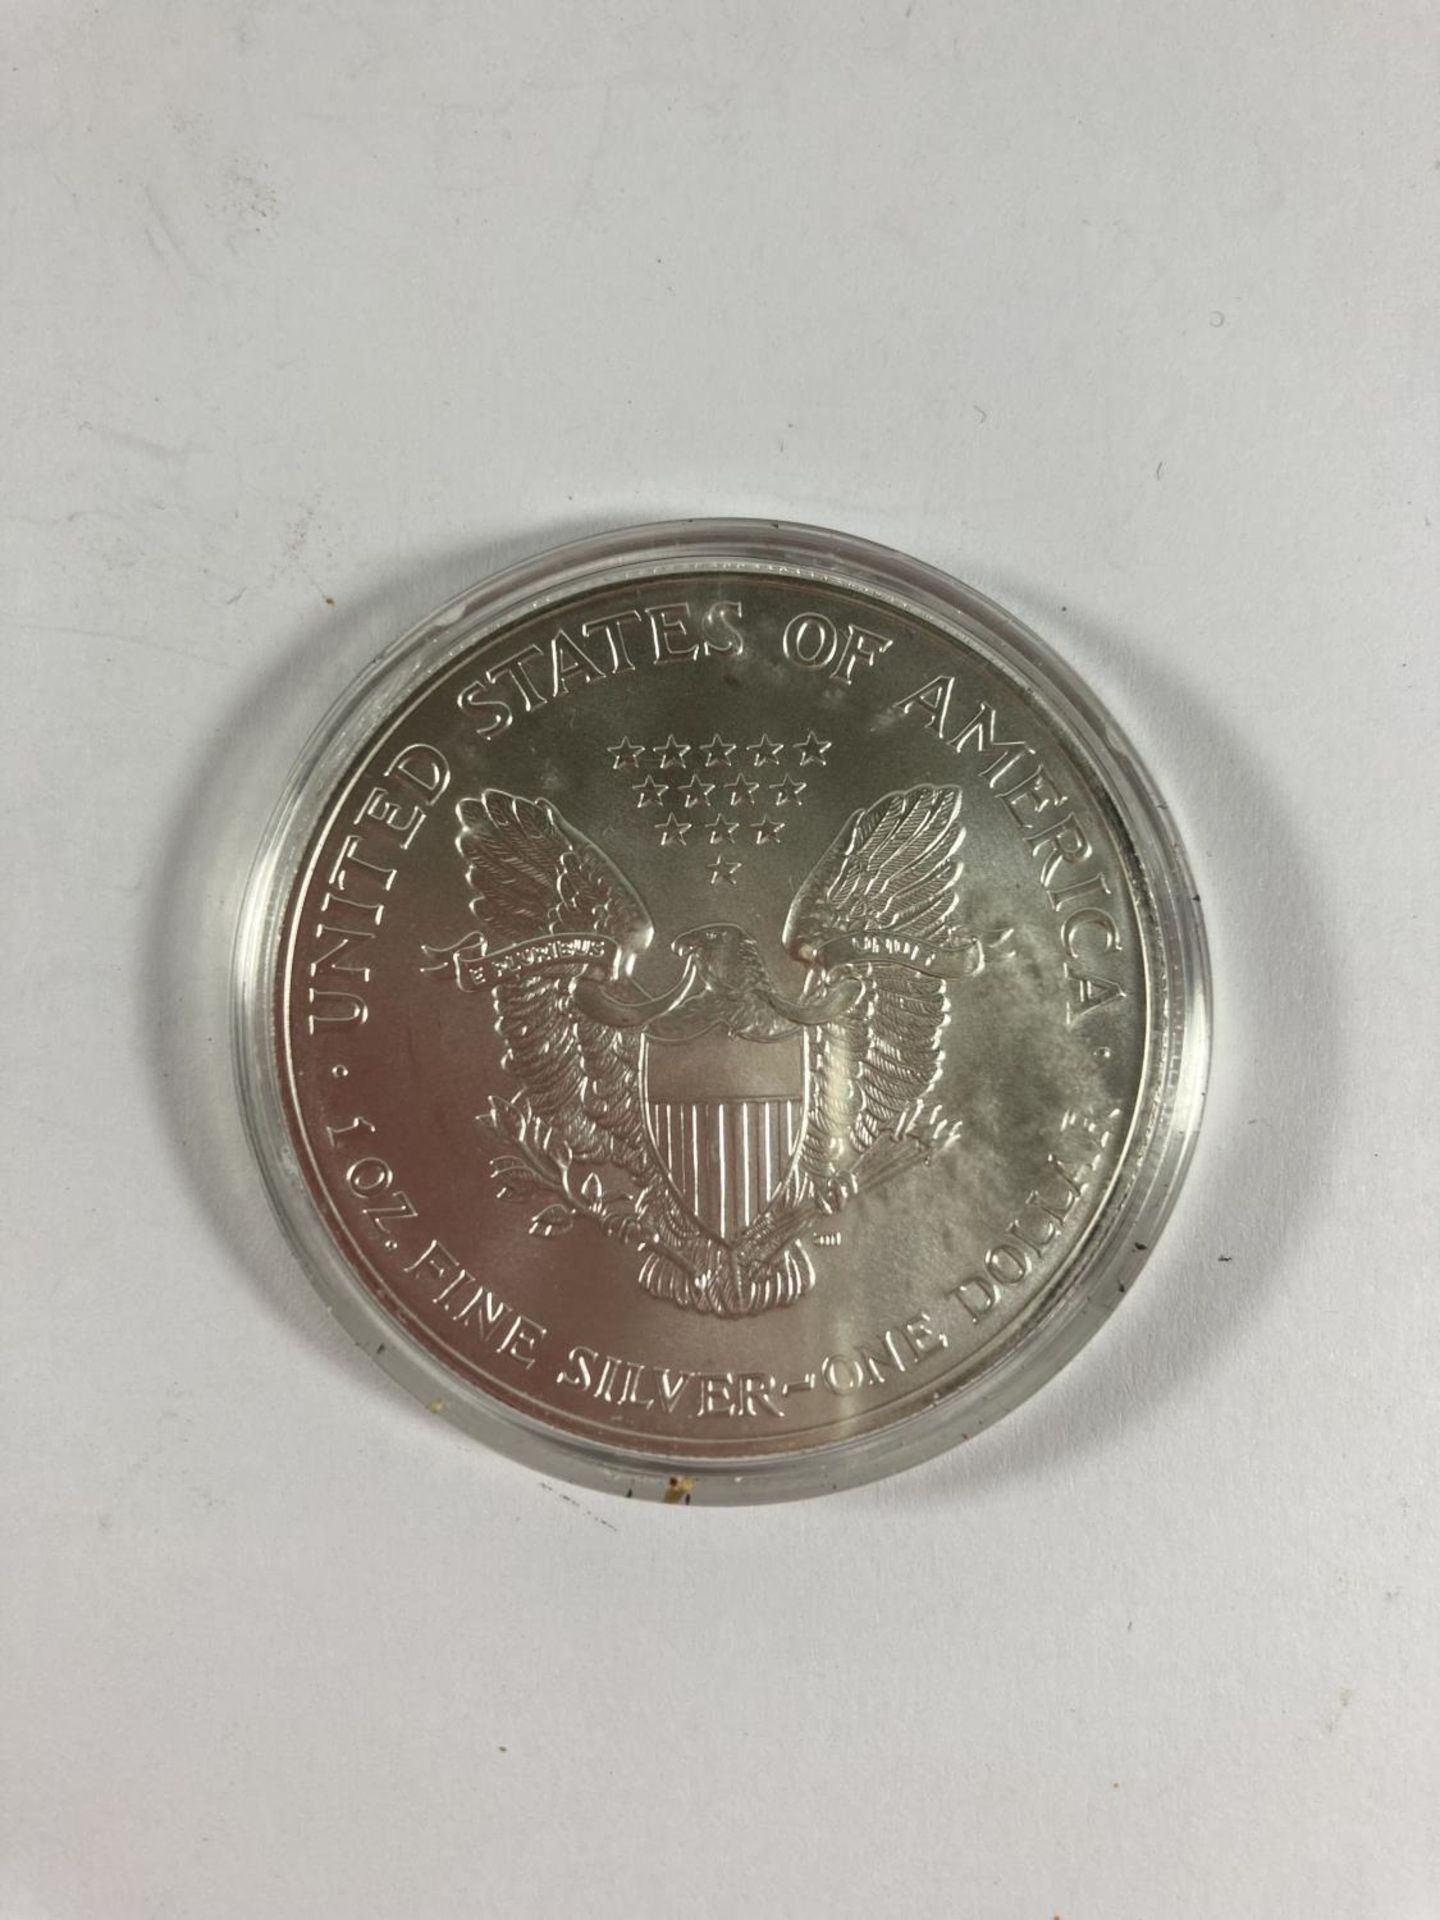 A 2002 AMERICAN SILVER 1OZ DOLLAR COIN